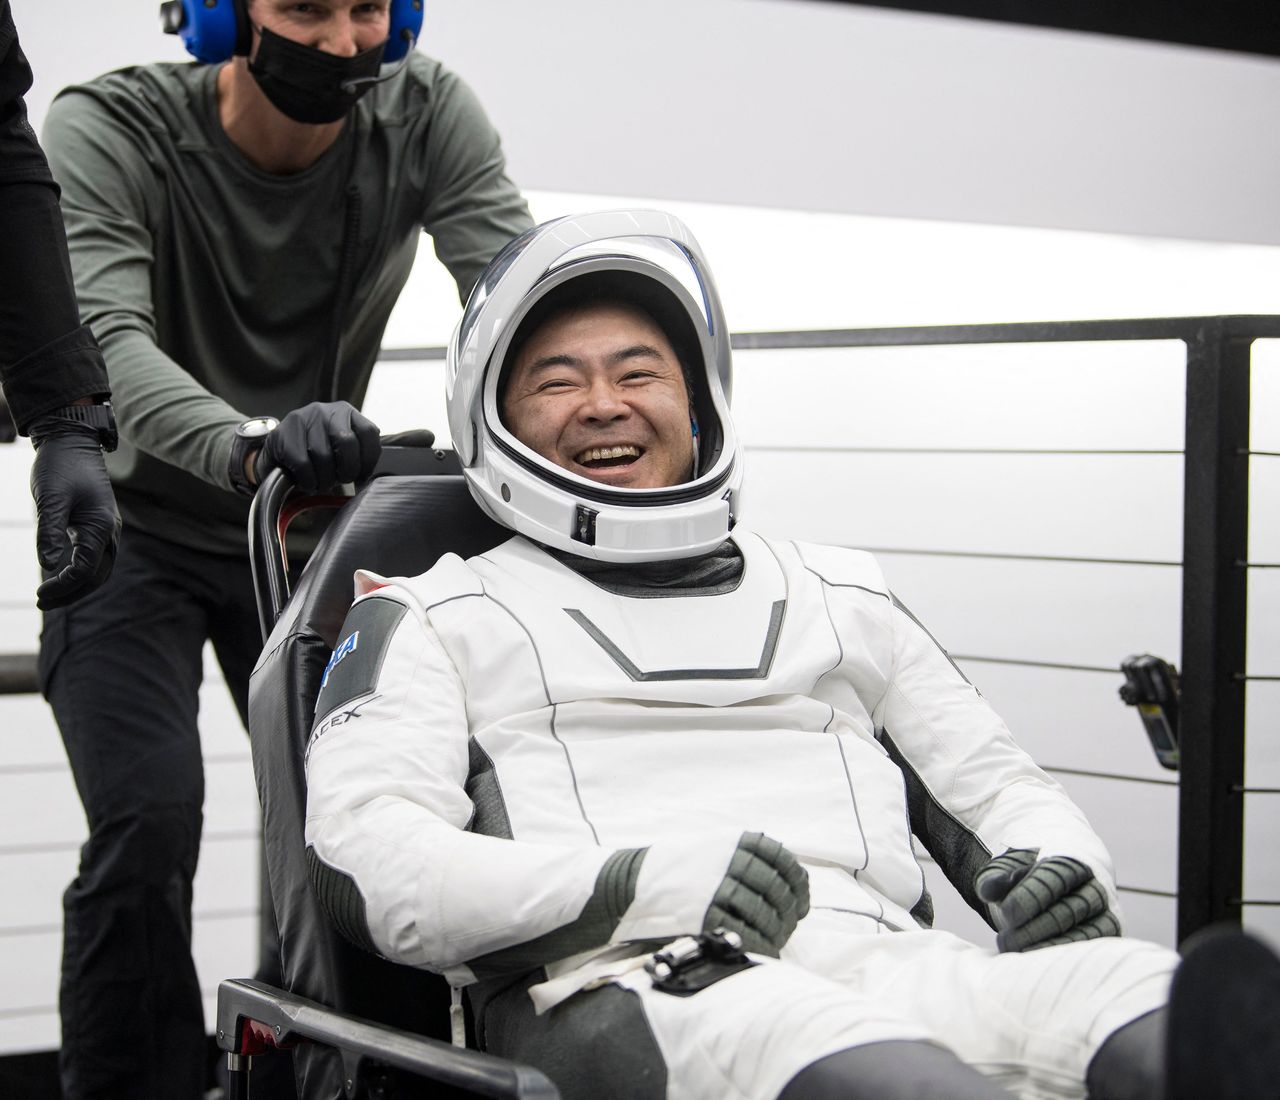 Хосидэ Акихико, покинувший американский космический корабль Crew Dragon по возвращении на Землю с МКС, 9 ноября 2021 г. (©AFP / Jiji Press)